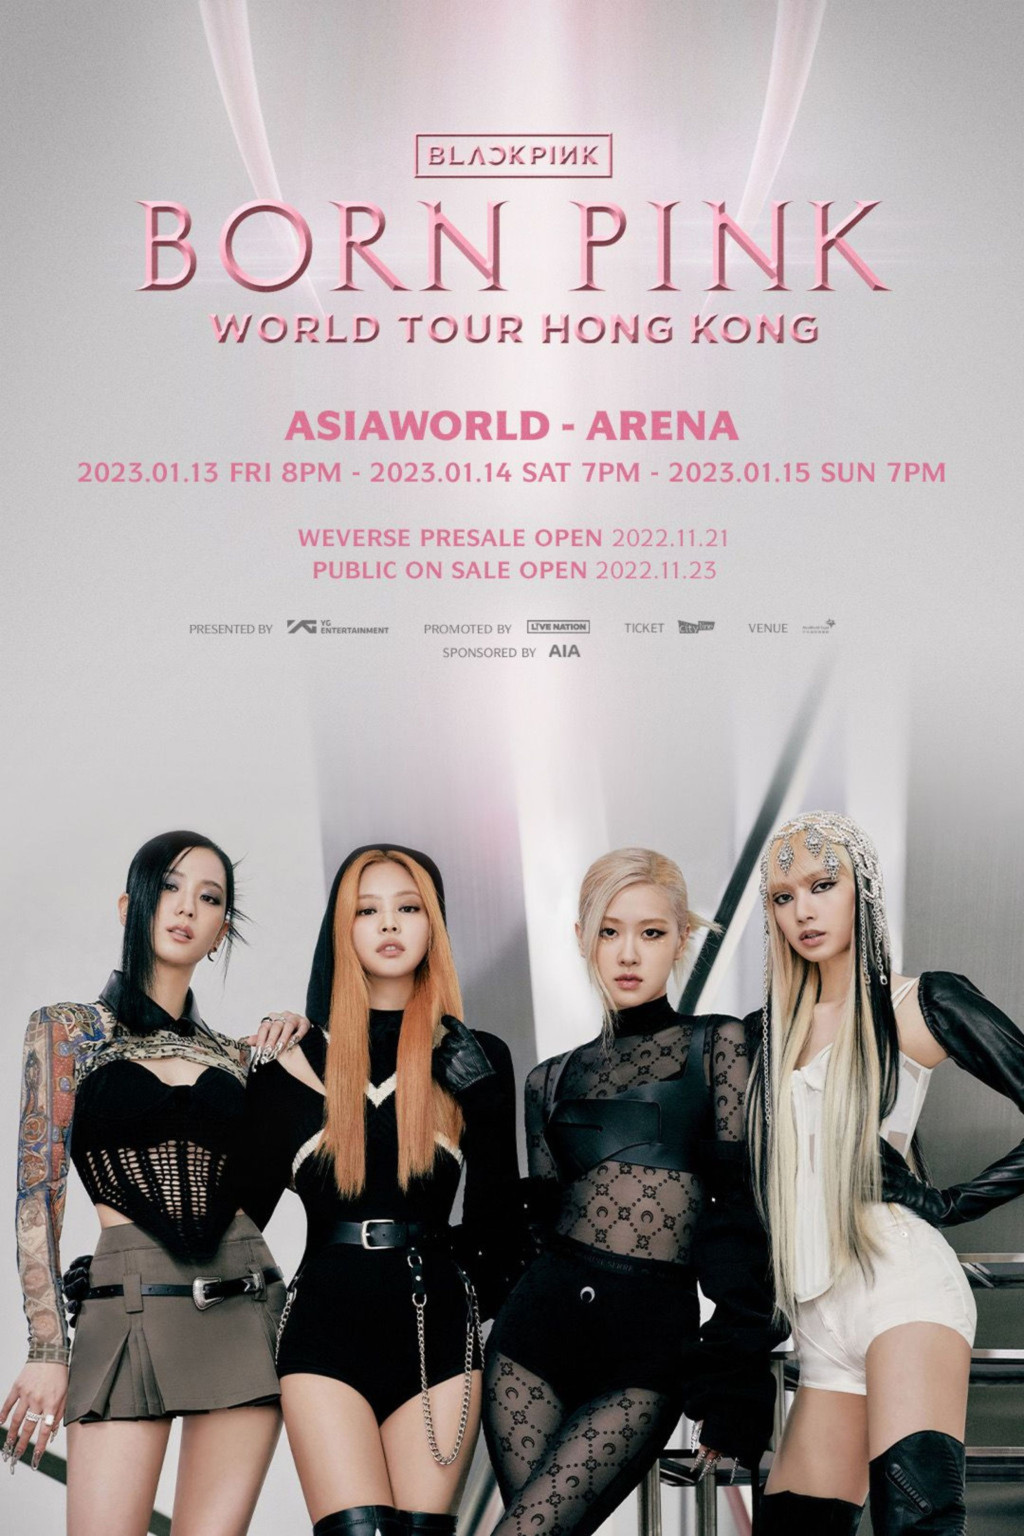 当红韩国女团BLACKPINK 将于本月在亚博馆举行世界巡回演唱会香港站。